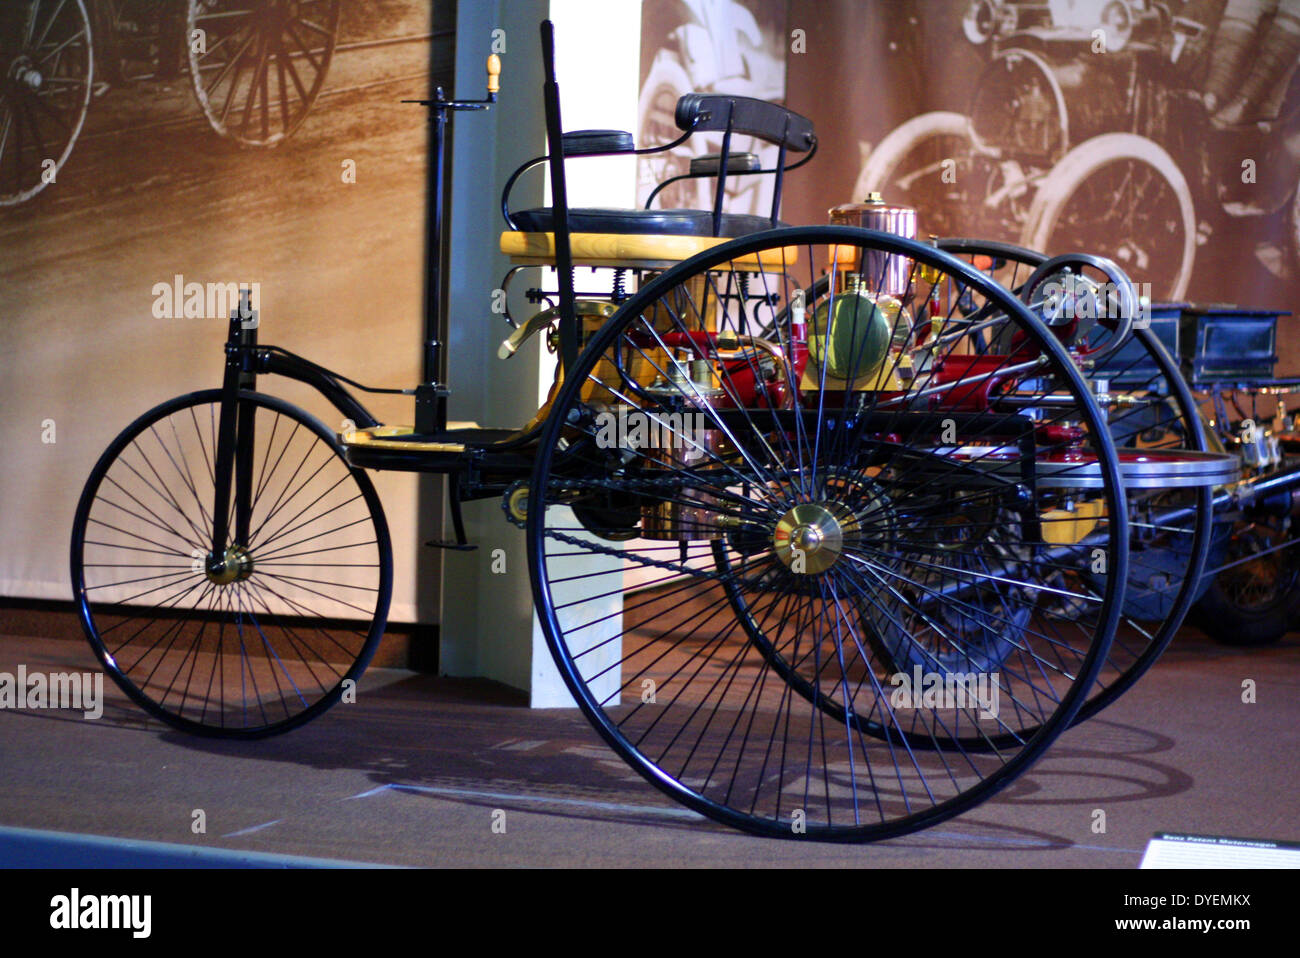 Le benz Patent-Motorwagen (un véhicule), construite en 1886, considérée comme la première automobile ; (véhicule conçu pour être propulsé par un moteur). Banque D'Images